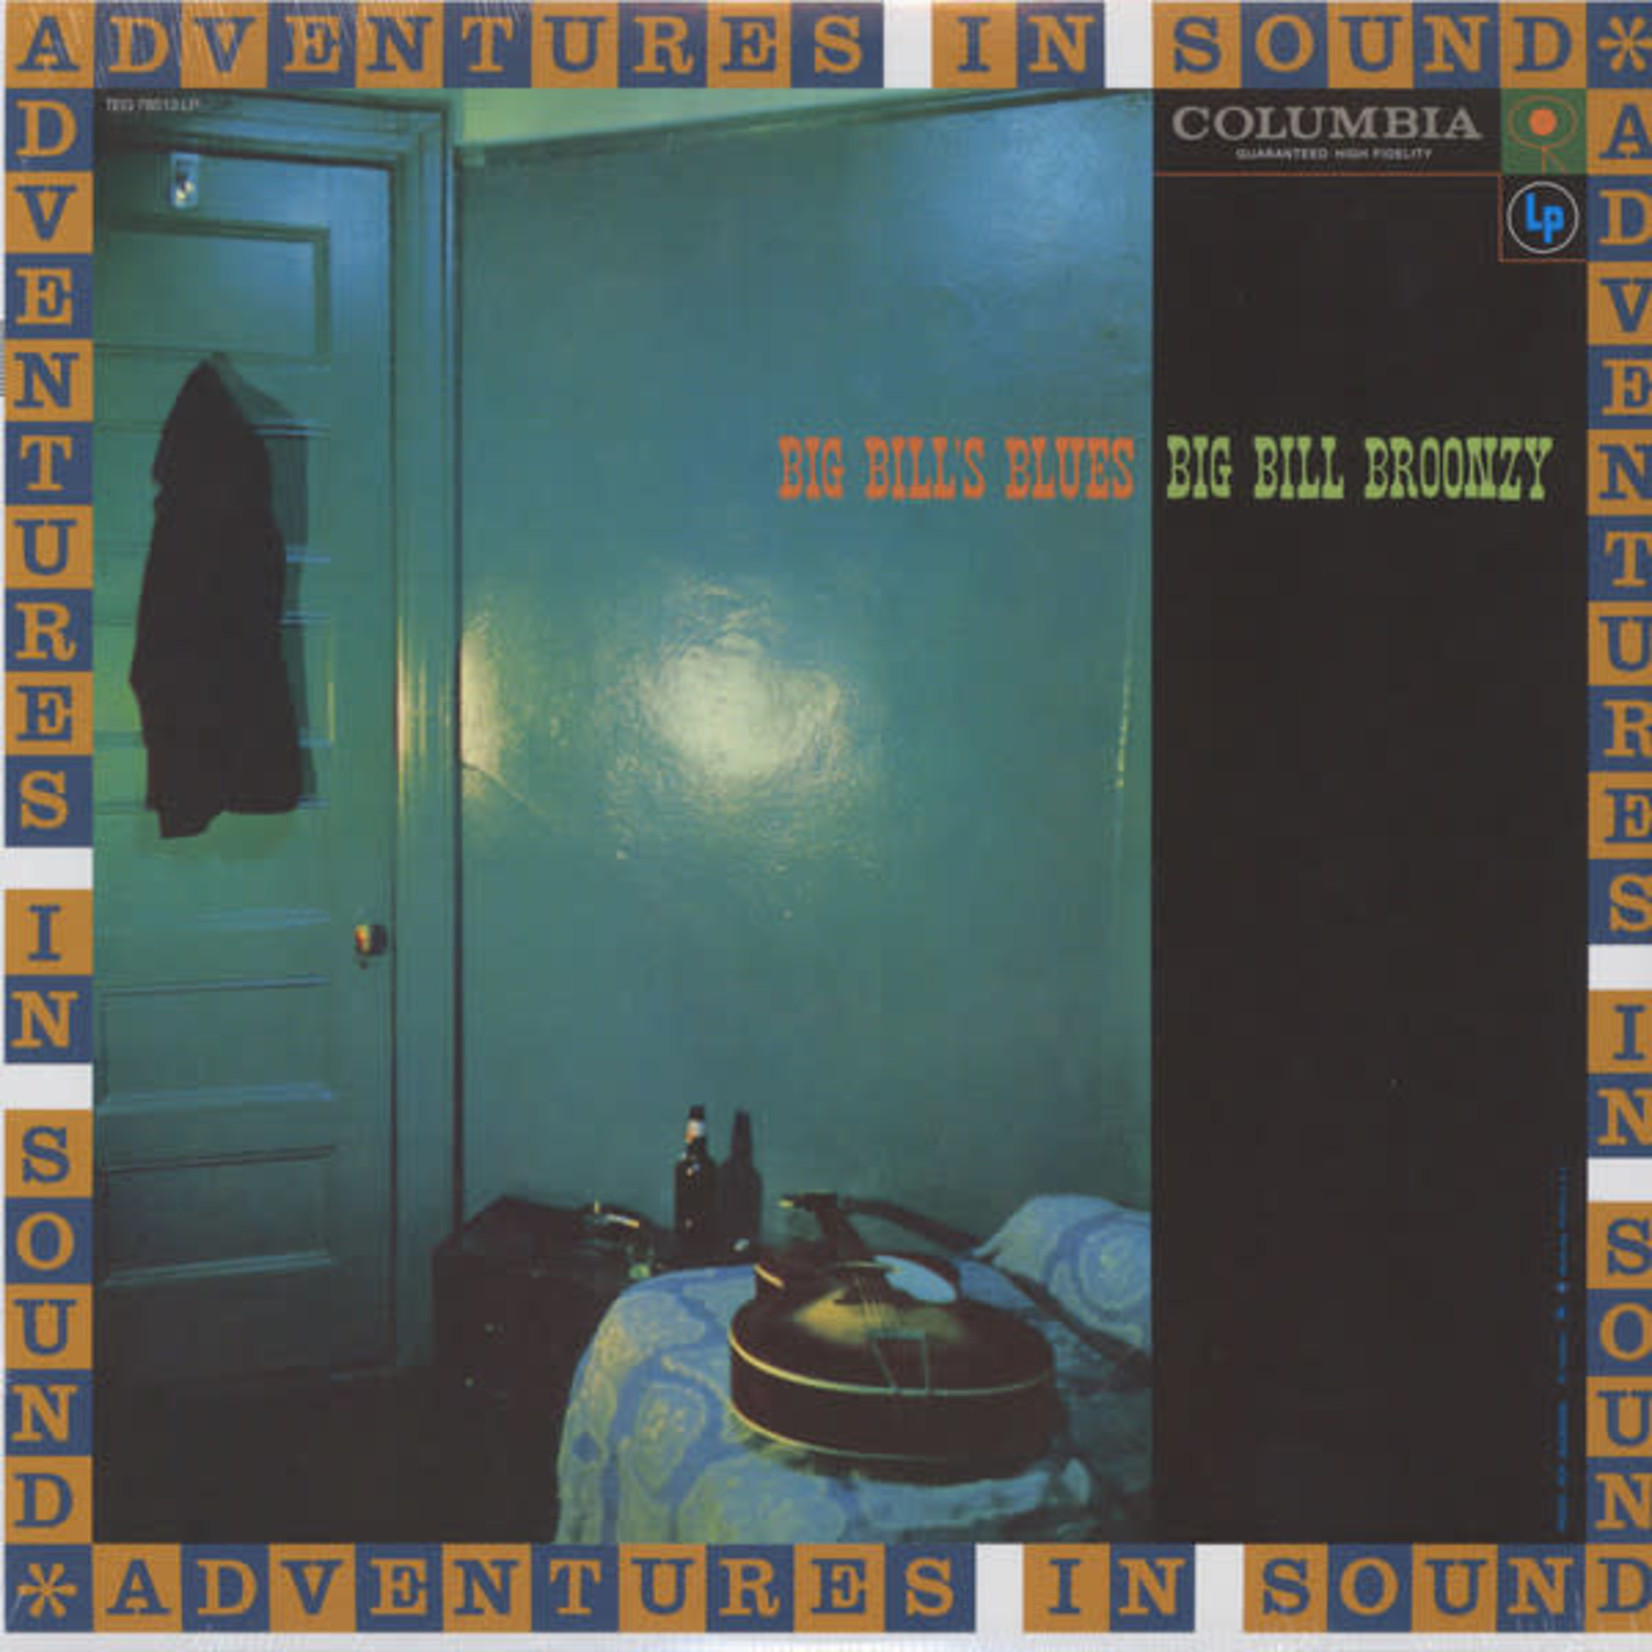 Columbia Big Bill Broonzy - Big Bill's Blues (LP)